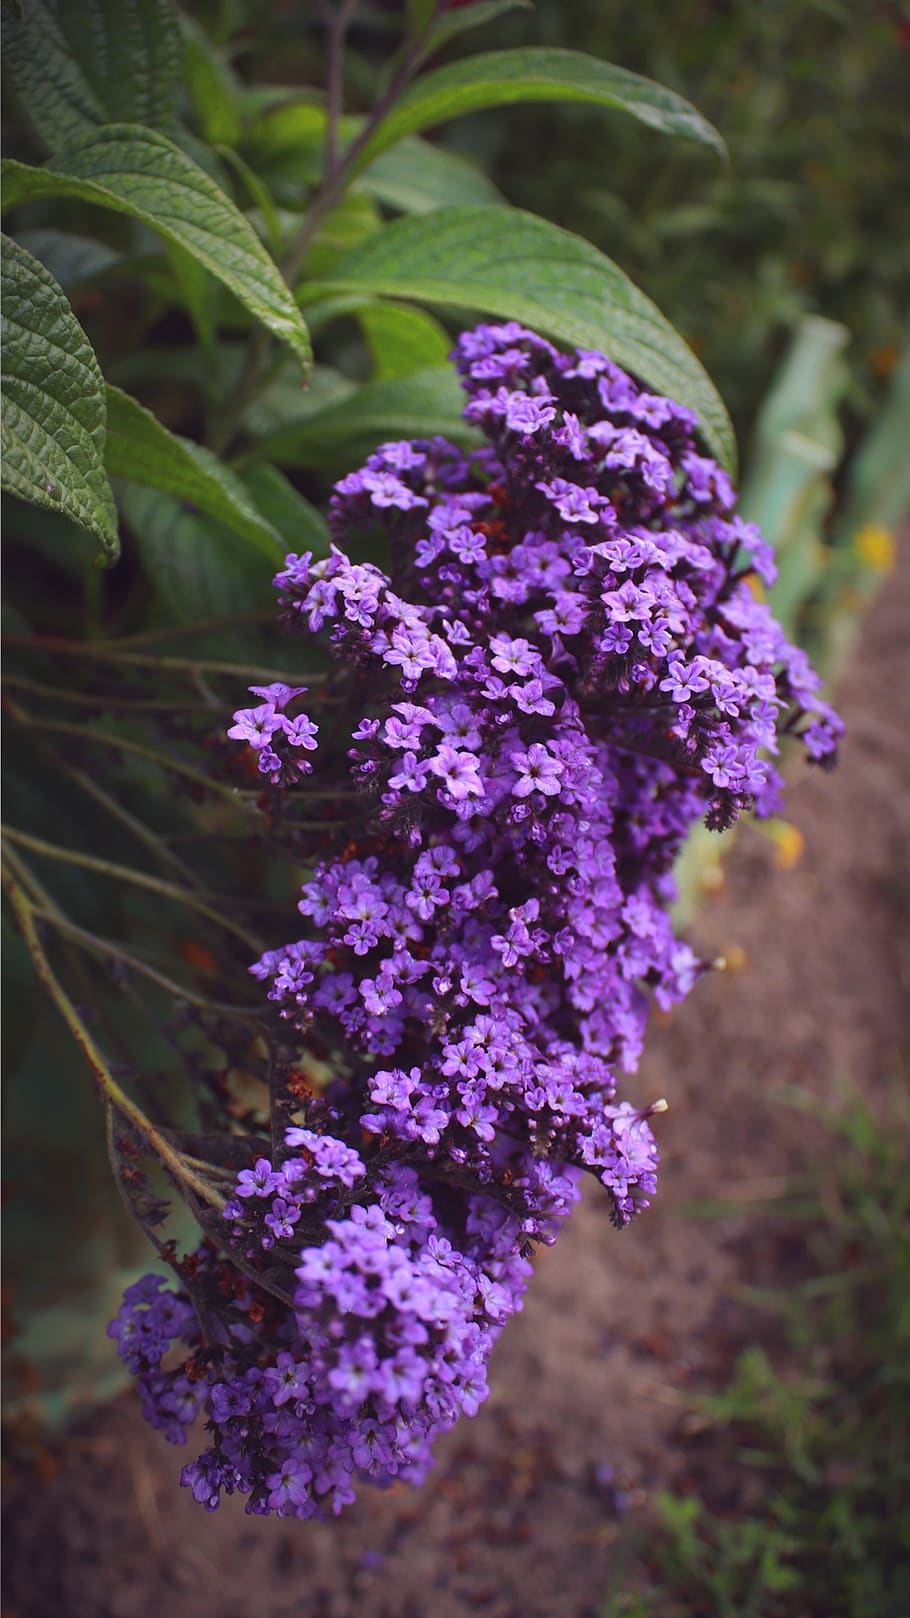 lilac, purple flowers, purple flower, blütenmeer, flowers, purple, green, plant, mother earth, gift